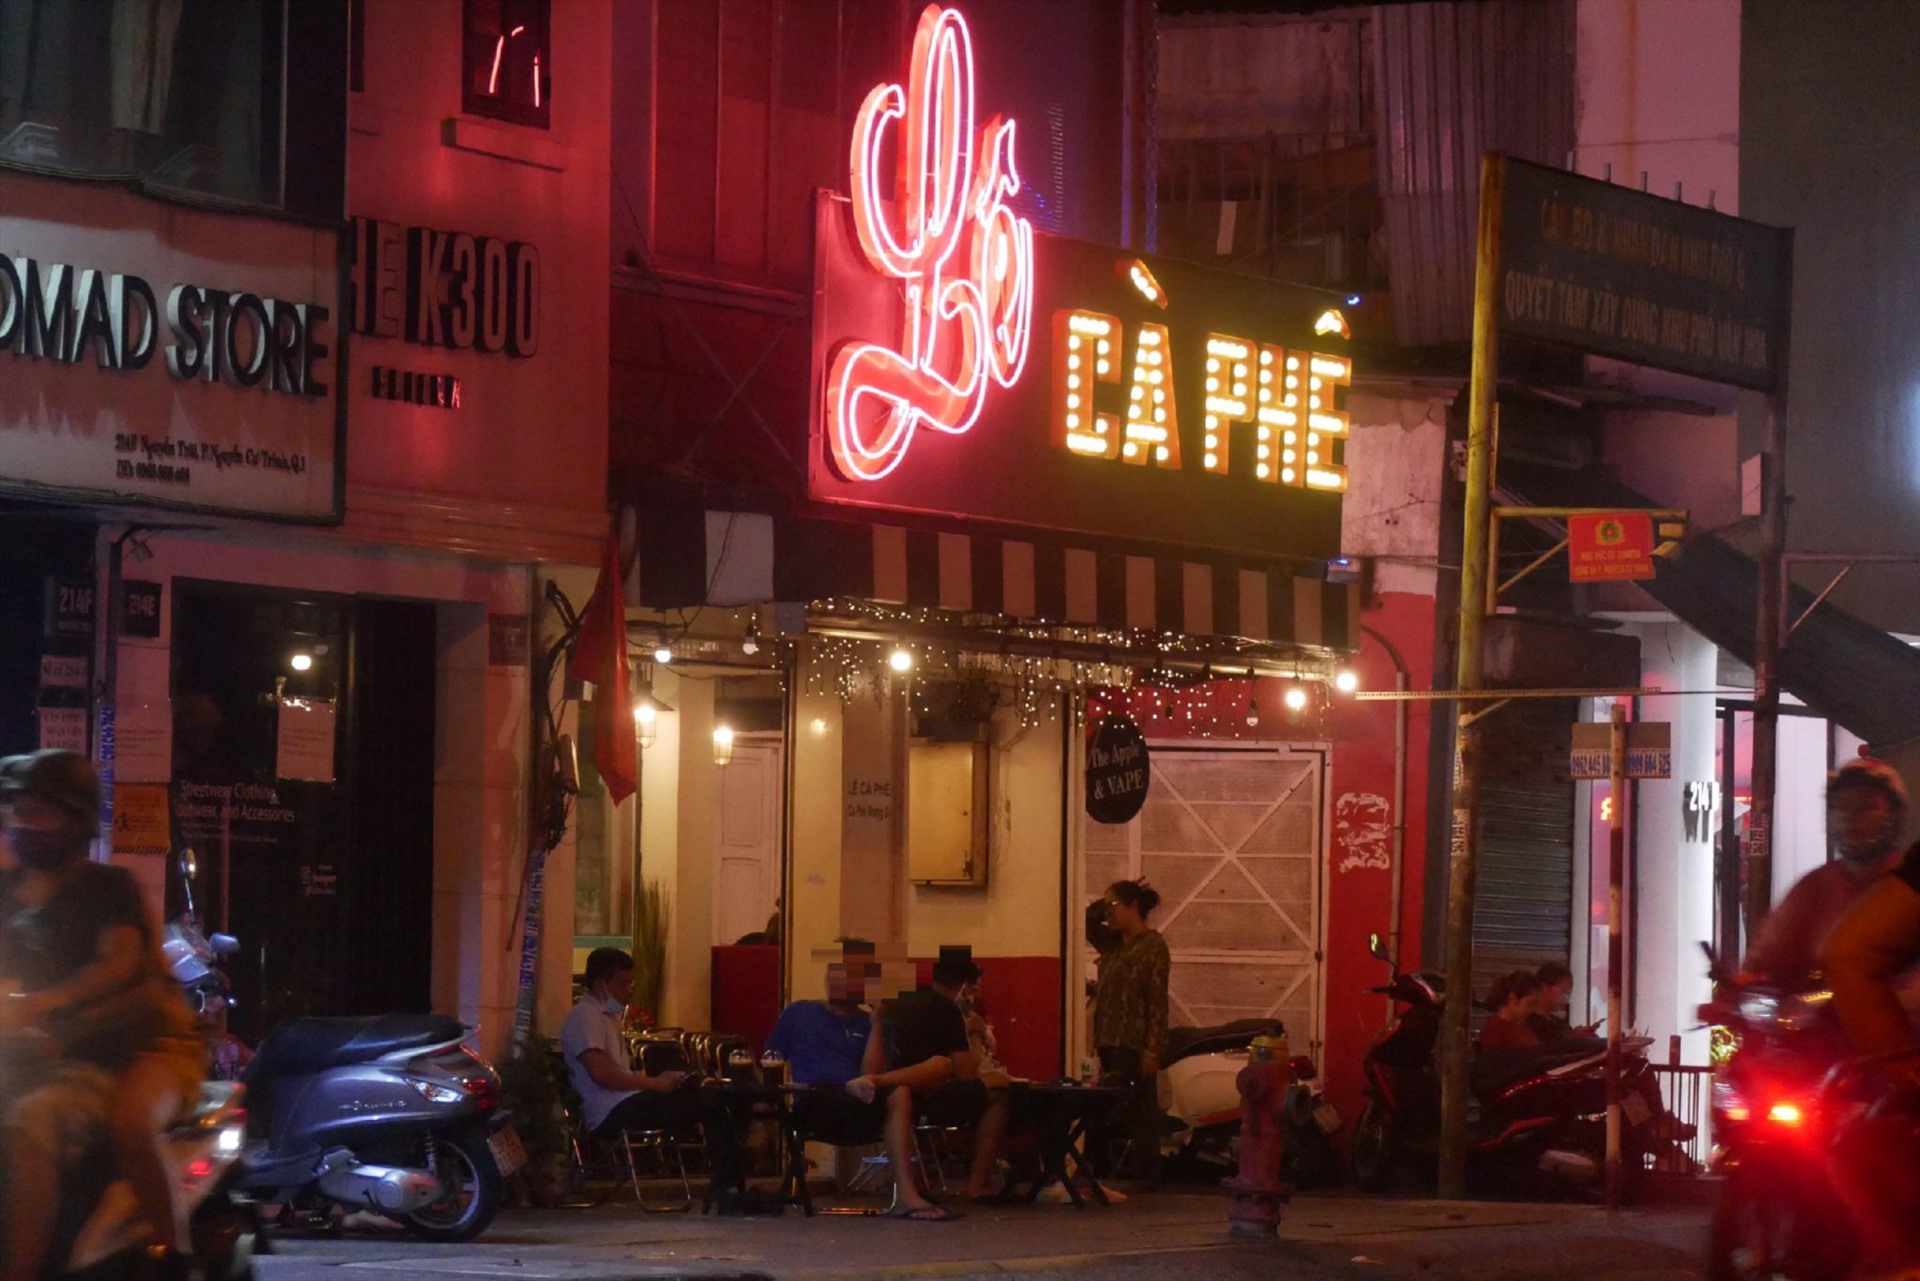 Tương tự, ghi nhận vào lúc 20h50 cùng ngày, quán cafe trên đường Nguyễn Trãi (quận 1) cũng đã sáng đèn đón khách.